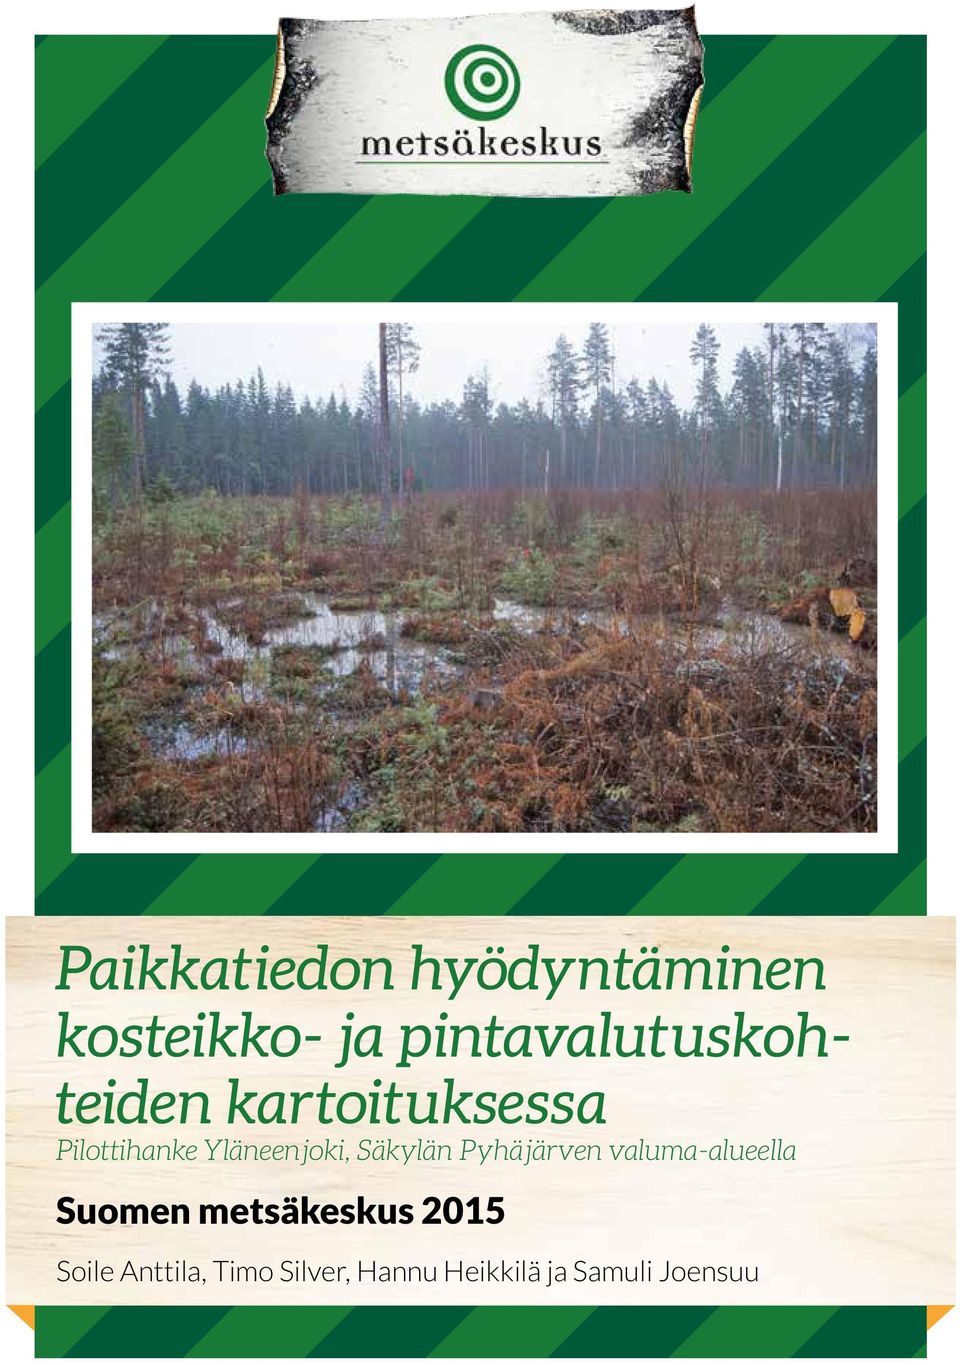 Yläneenjoki, Säkylän Pyhäjärven valuma-alueella Suomen